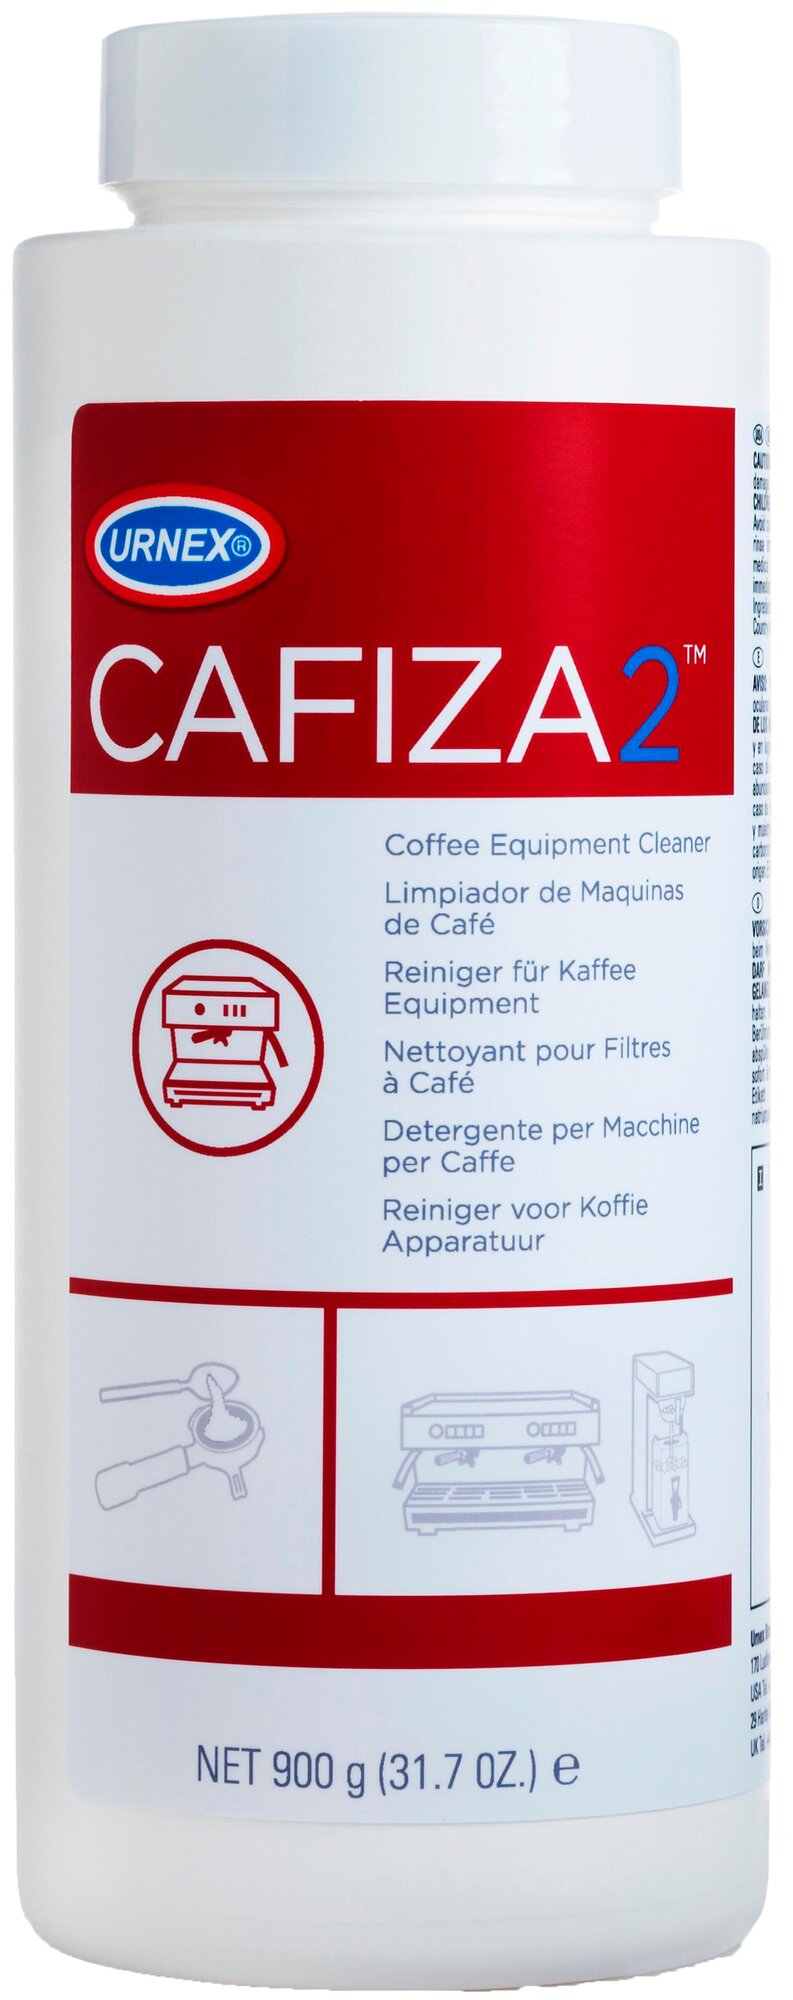 Для чистки от кофейных масел Cafiza2 Urnex